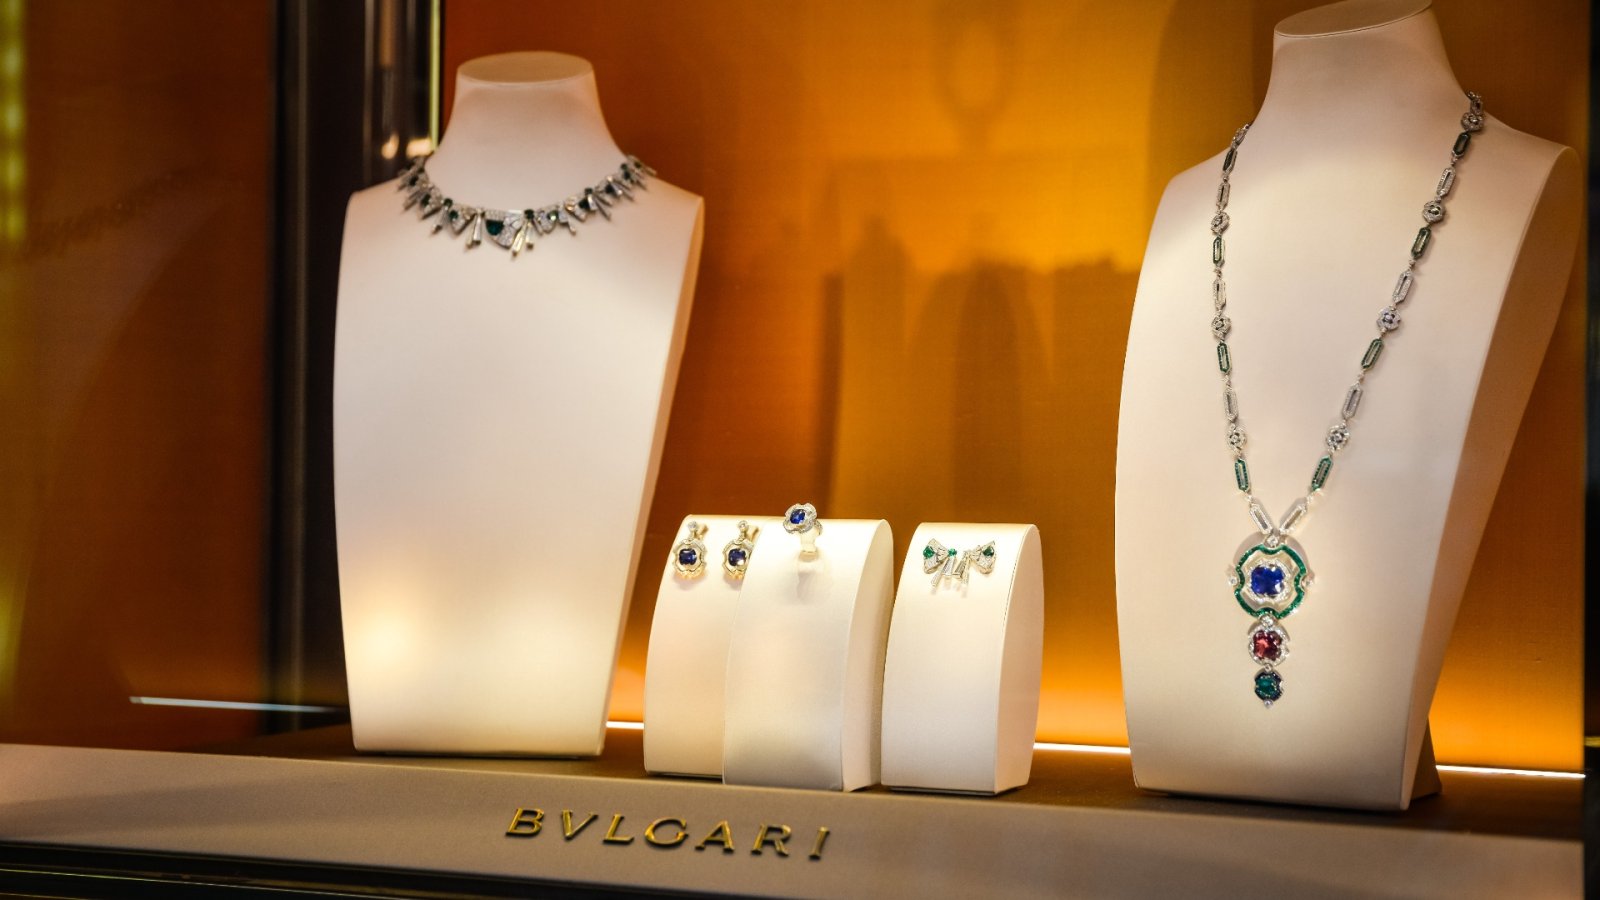 Bulgari hoge juwelen tentoongesteld in NYC: ontdek het symbool van wedergeboorte